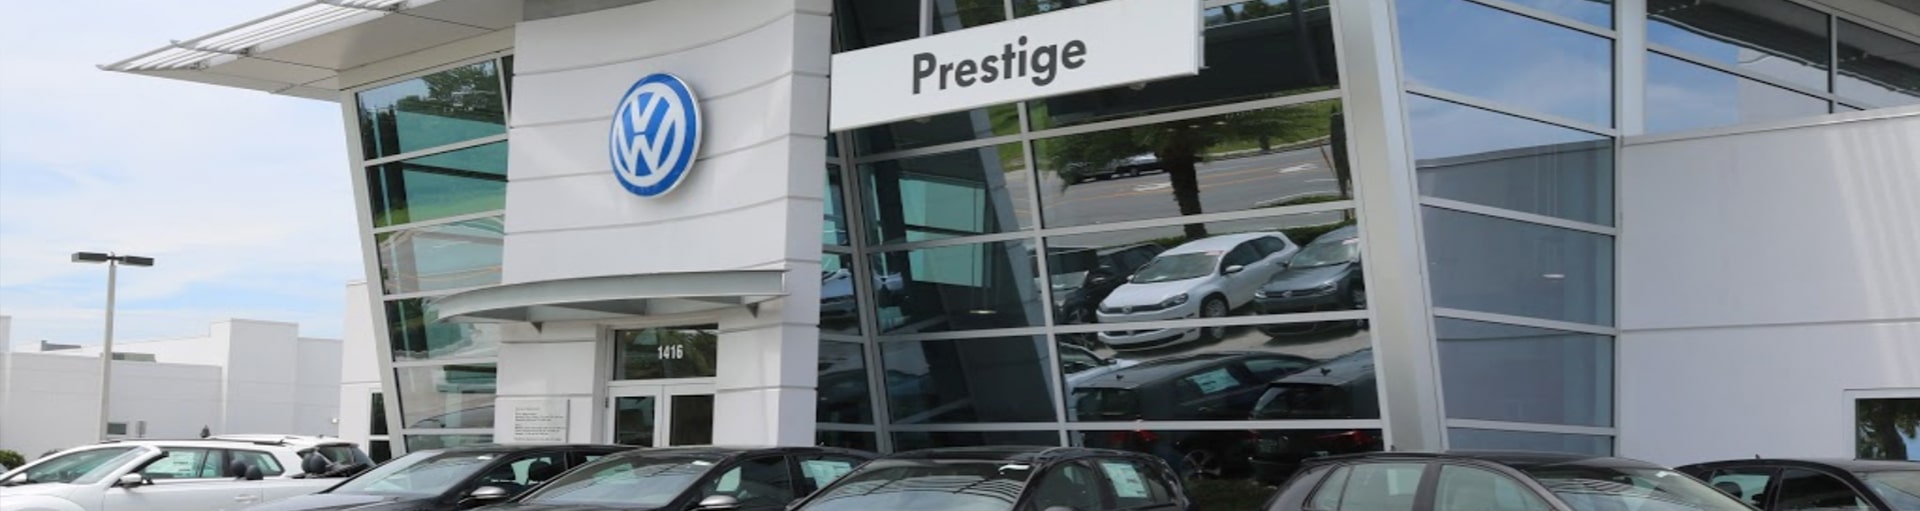 Prestige Volkswagen of Melbourne Battery Replacement